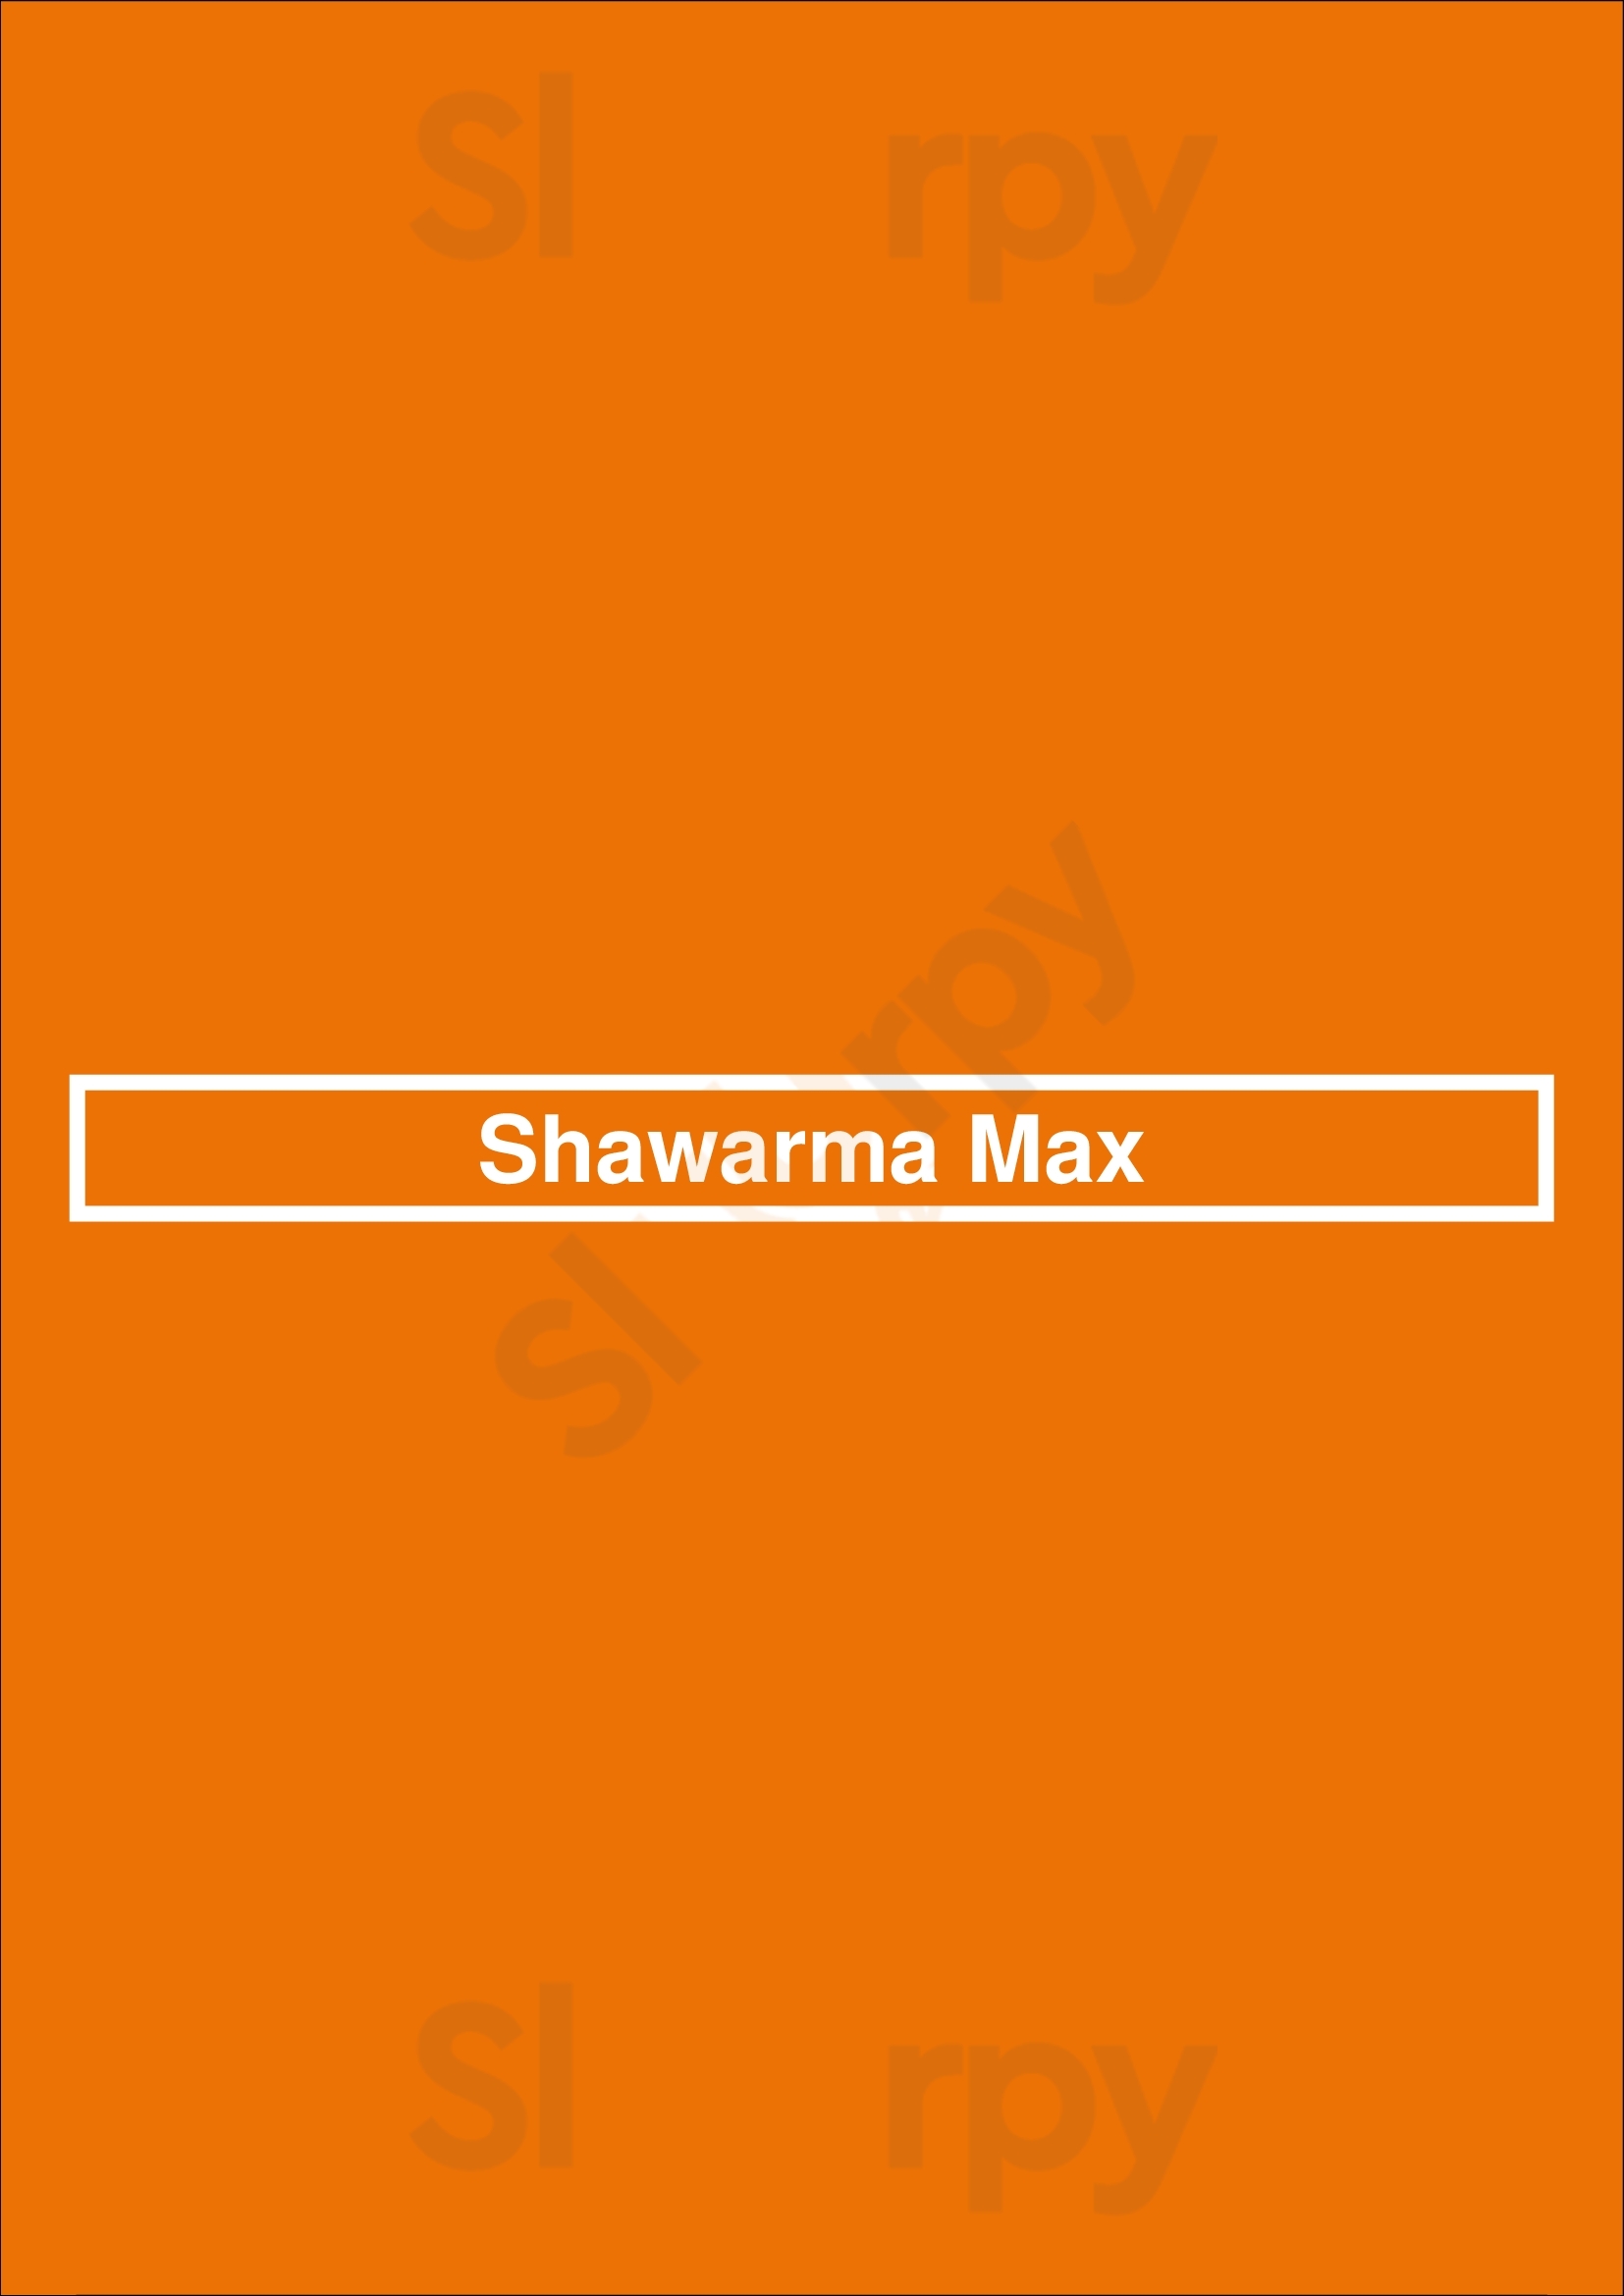 Shawarma Max Toronto Menu - 1